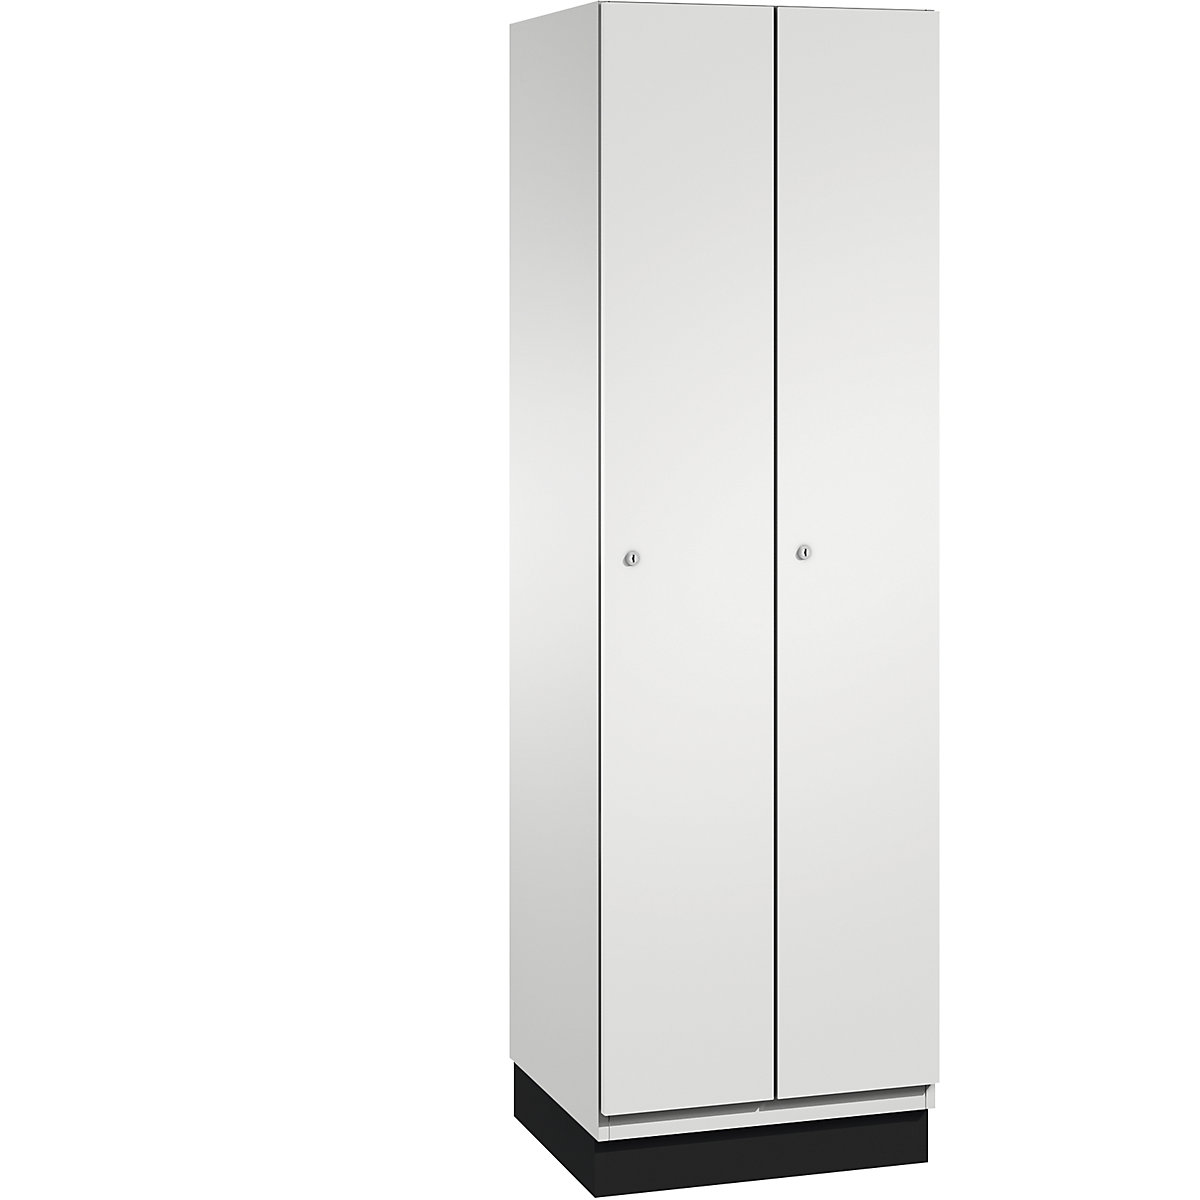 CAMBIO cloakroom locker with sheet steel doors – C+P, 2 compartments, 600 mm wide, body light grey / door light grey-3